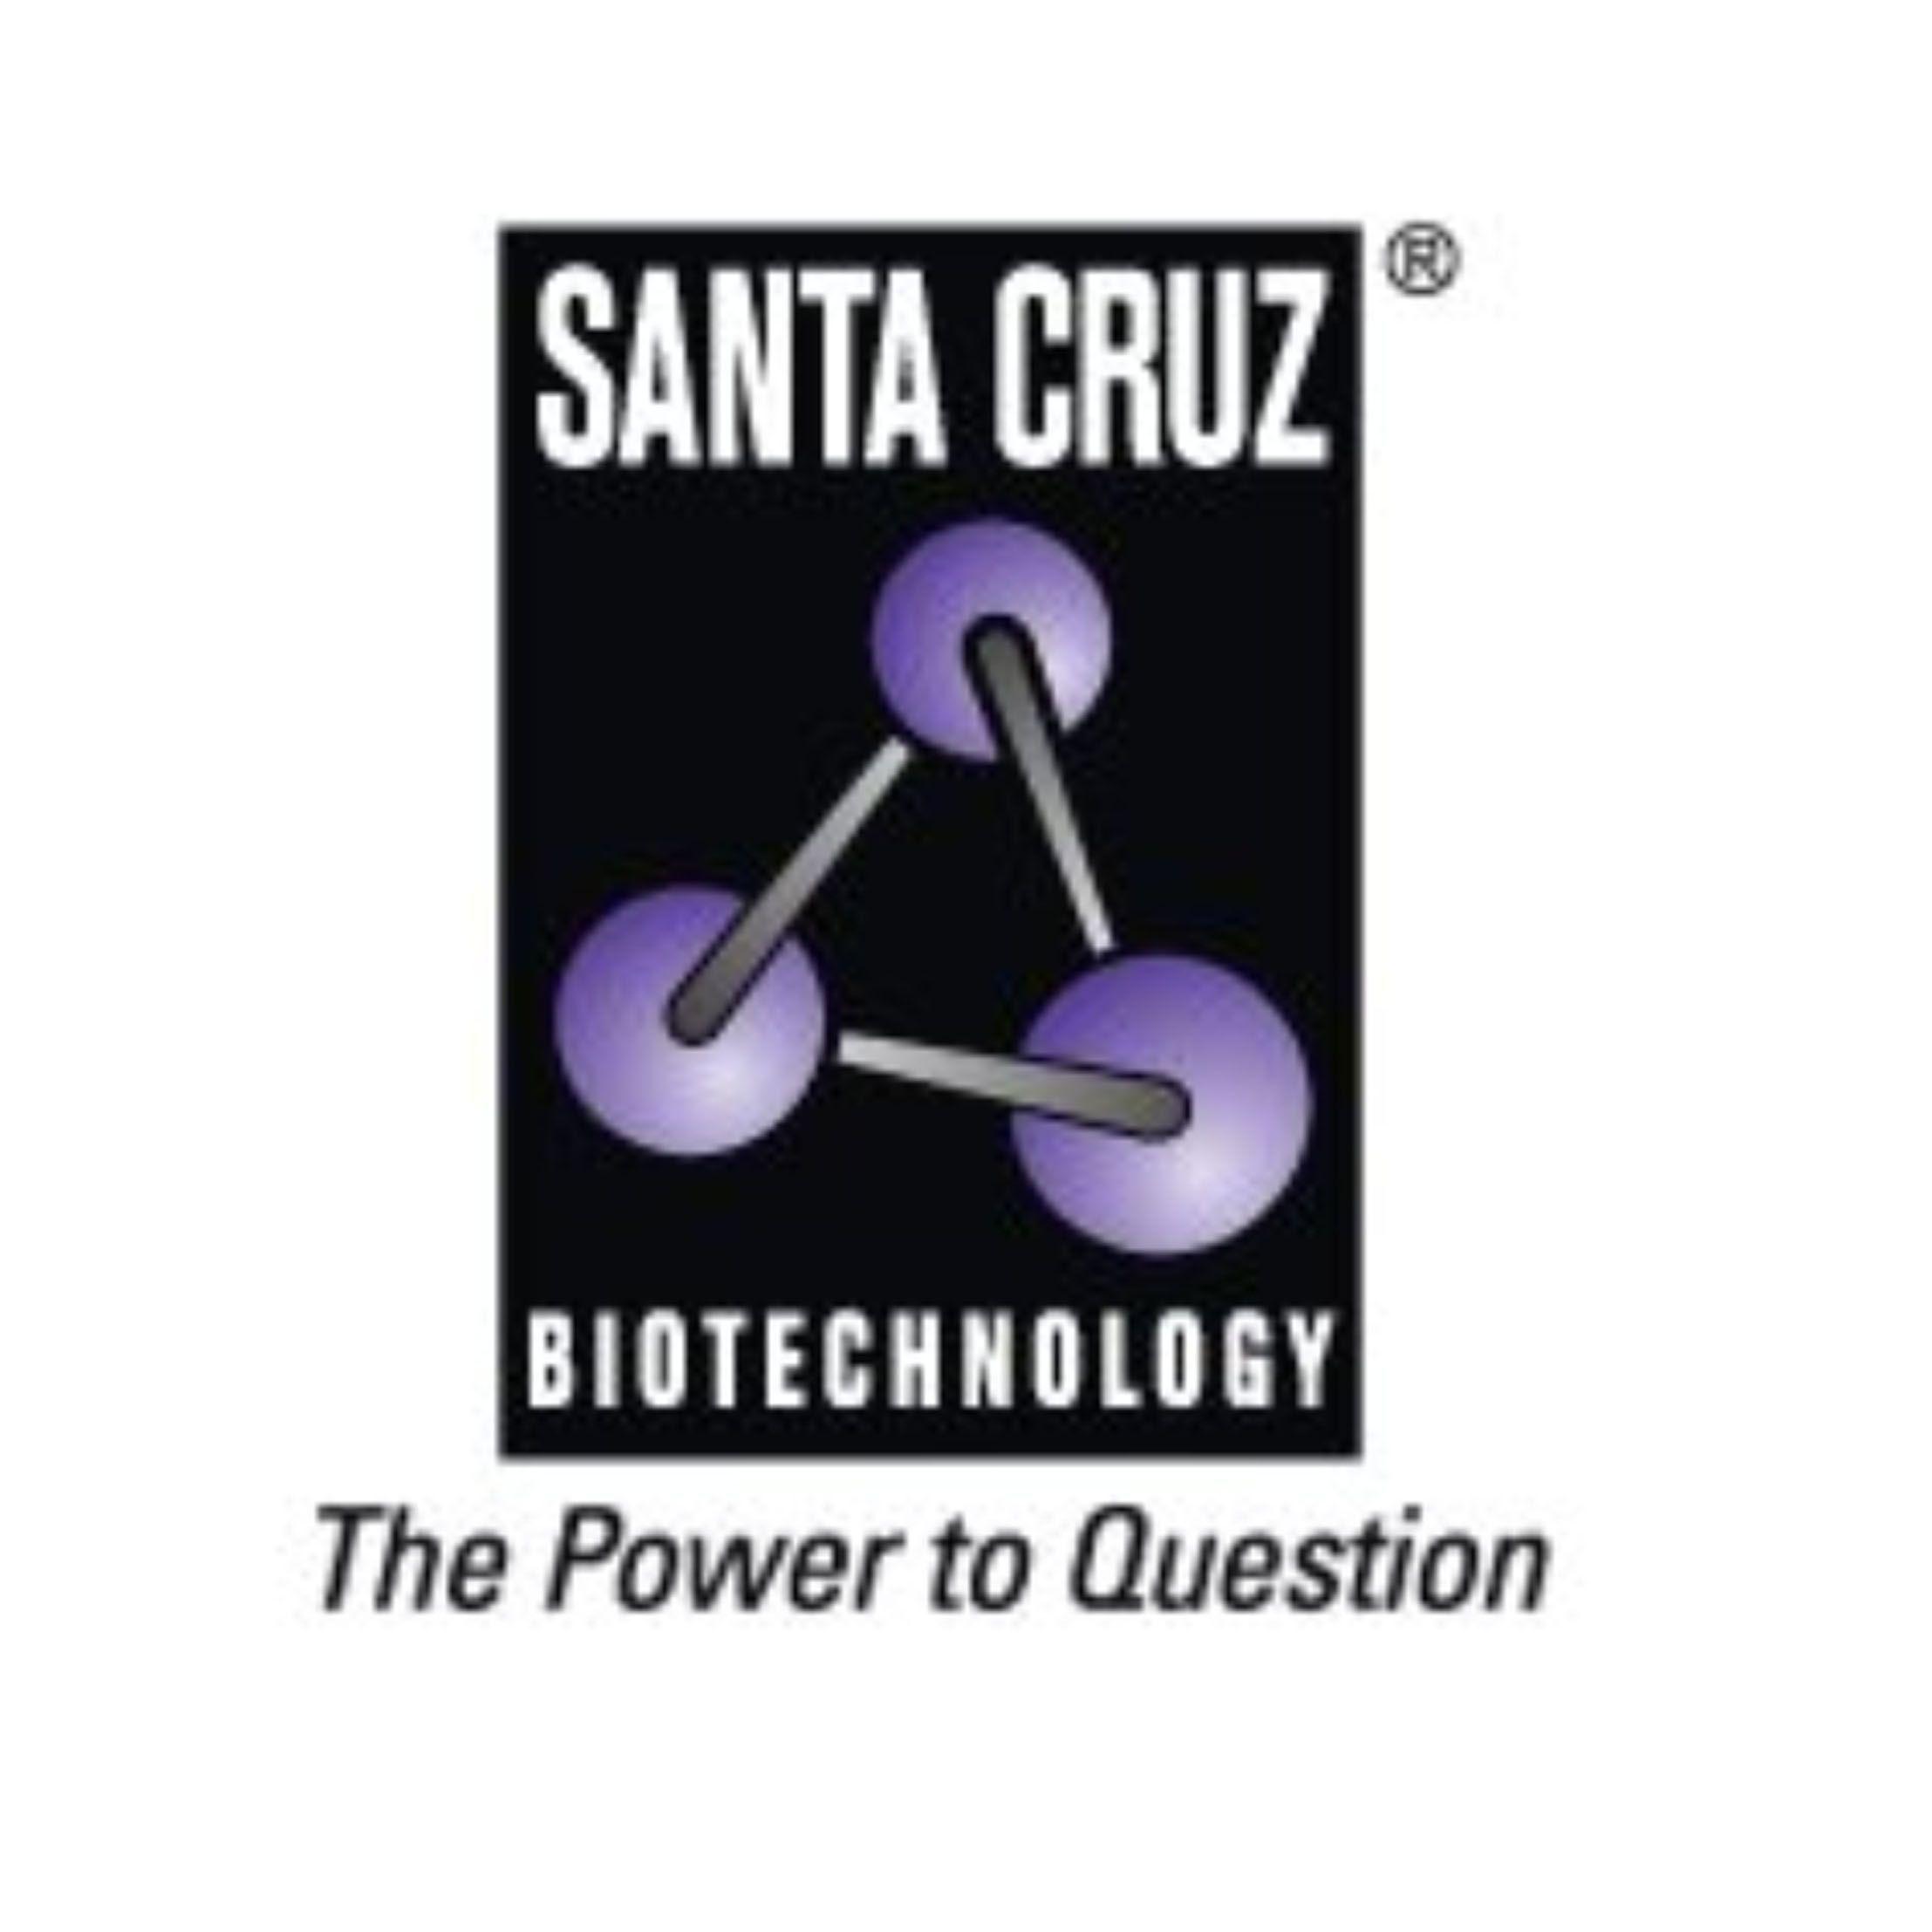 SCBT - Santa Cruz BiotechnologyROR抗体、Luciferase 抗体、类固醇受体，现货